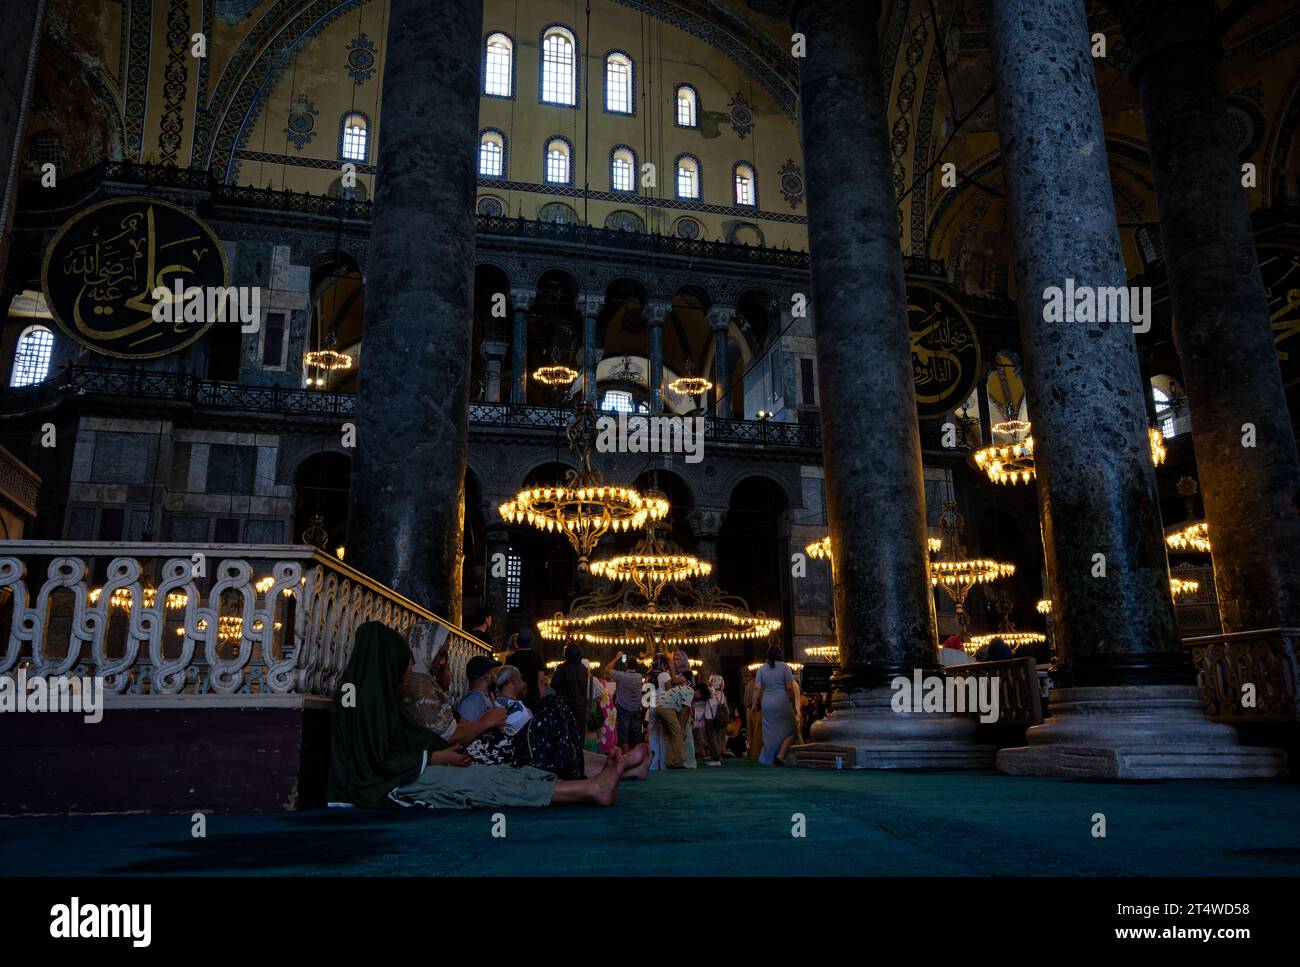 Besucher sitzen, ruhen und beten in der Hagia Sophia, umgeben von Geschichte und Ruhe auf dem emblematischen türkisfarbenen Teppich. Stockfoto